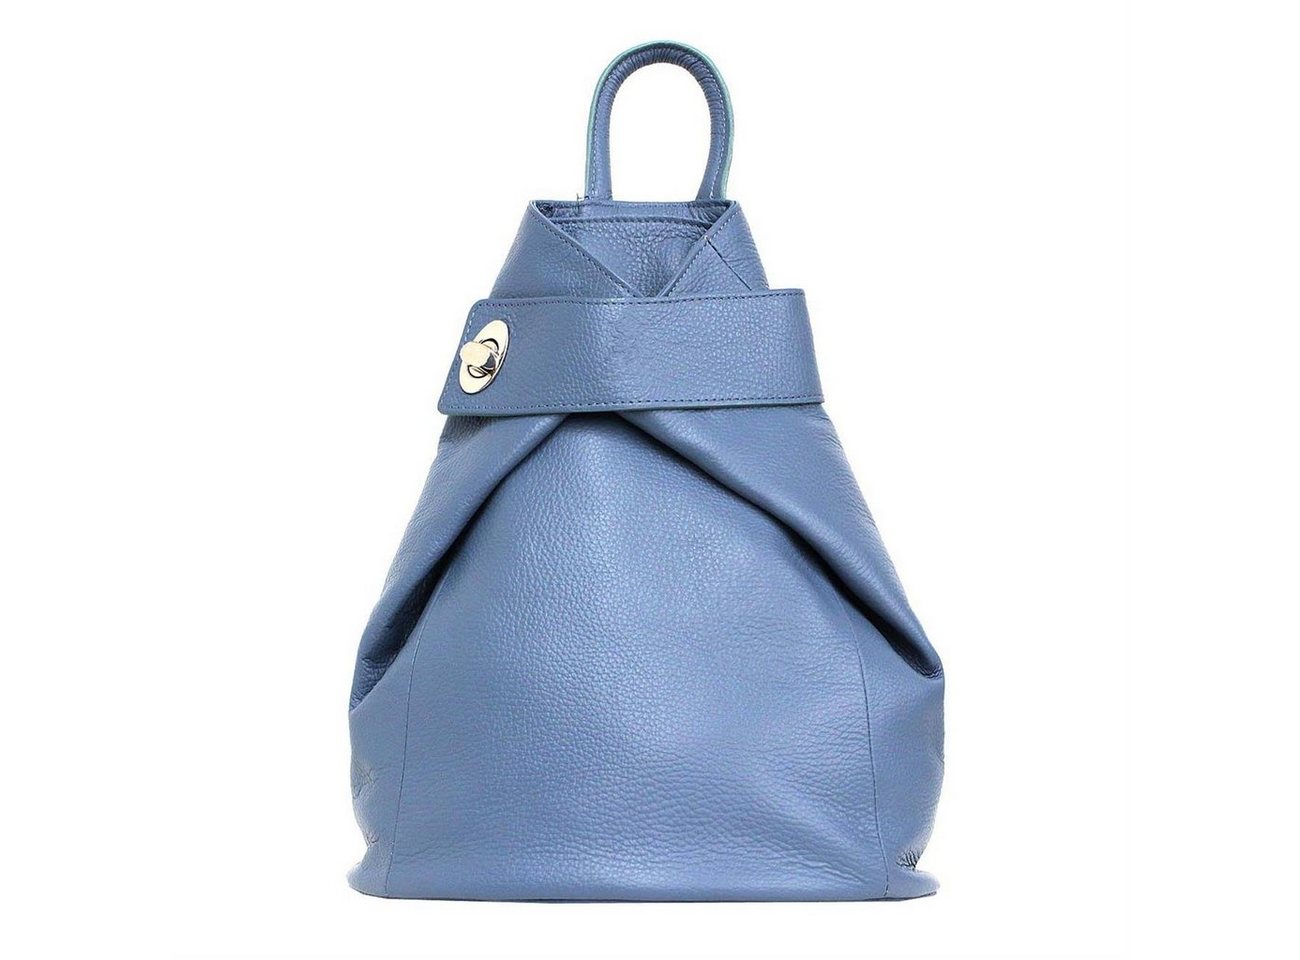 ITALYSHOP24 Rucksack Made in Italy Damen Leder Rucksack Schultertasche, als Umhängetasche & Handtasche tragbar, XL Shopper von ITALYSHOP24